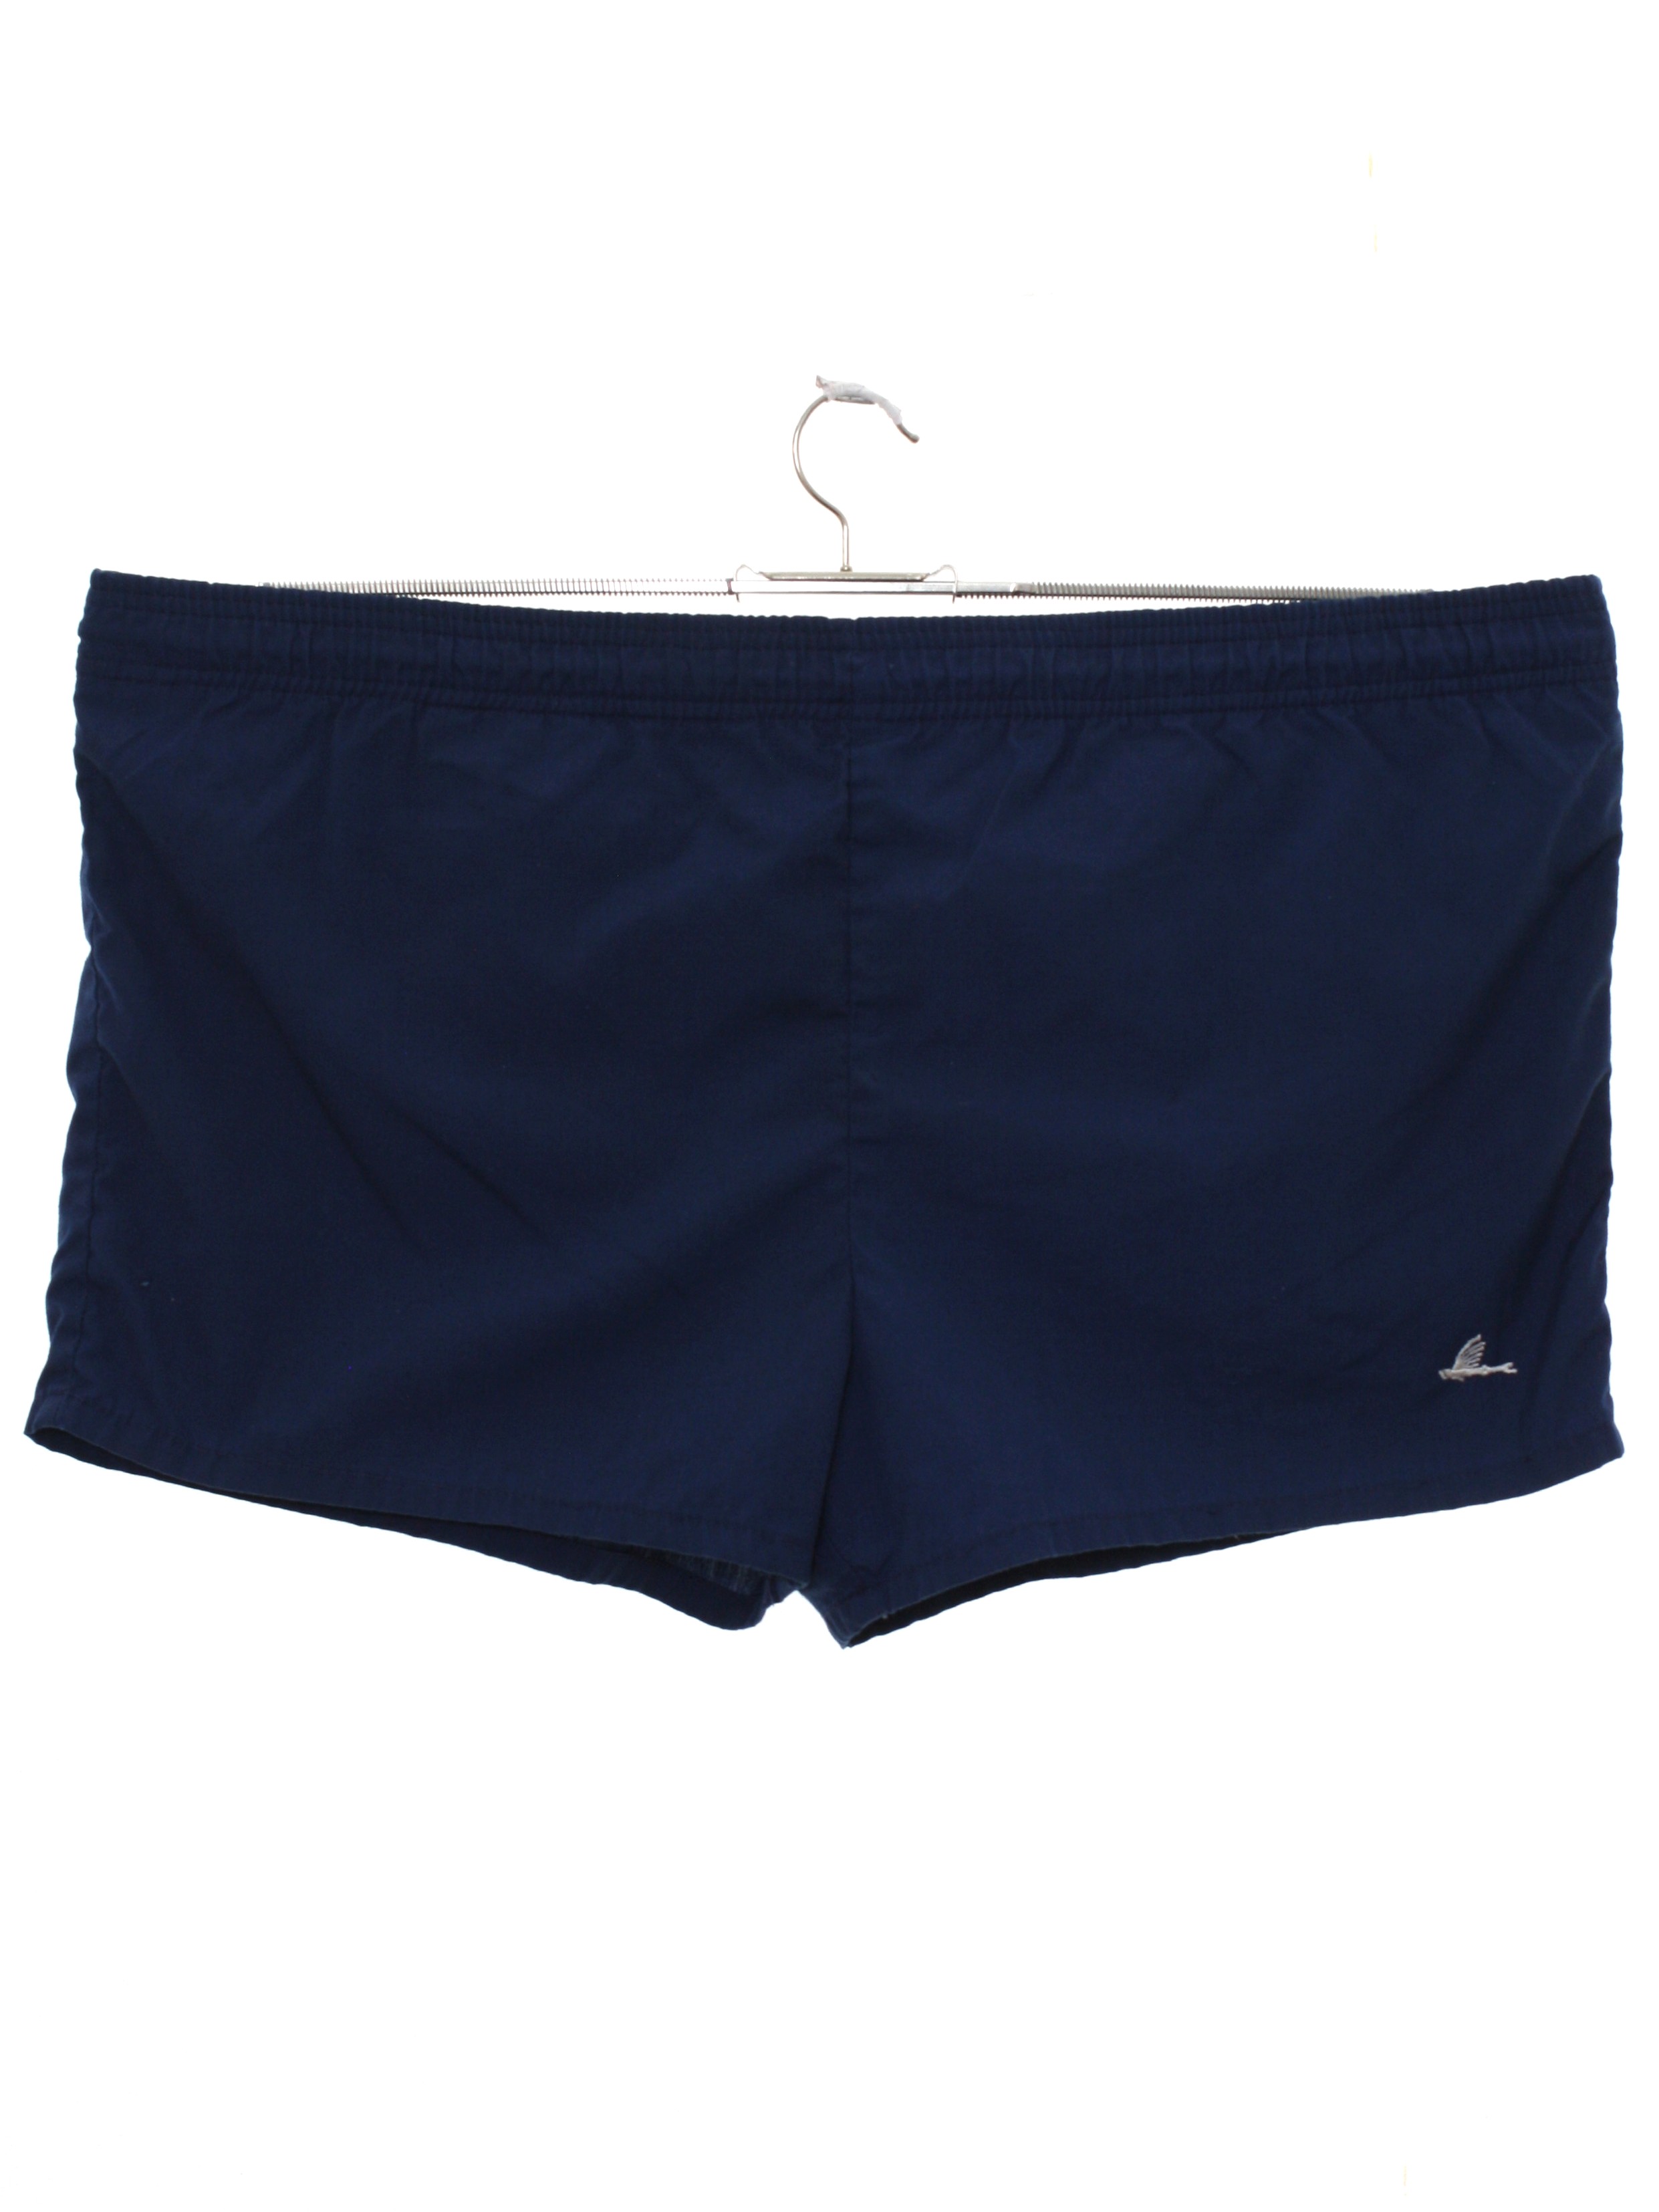 1980's Swimsuit/Swimwear (Catalina): 80s -Catalina- Mens midnight blue ...